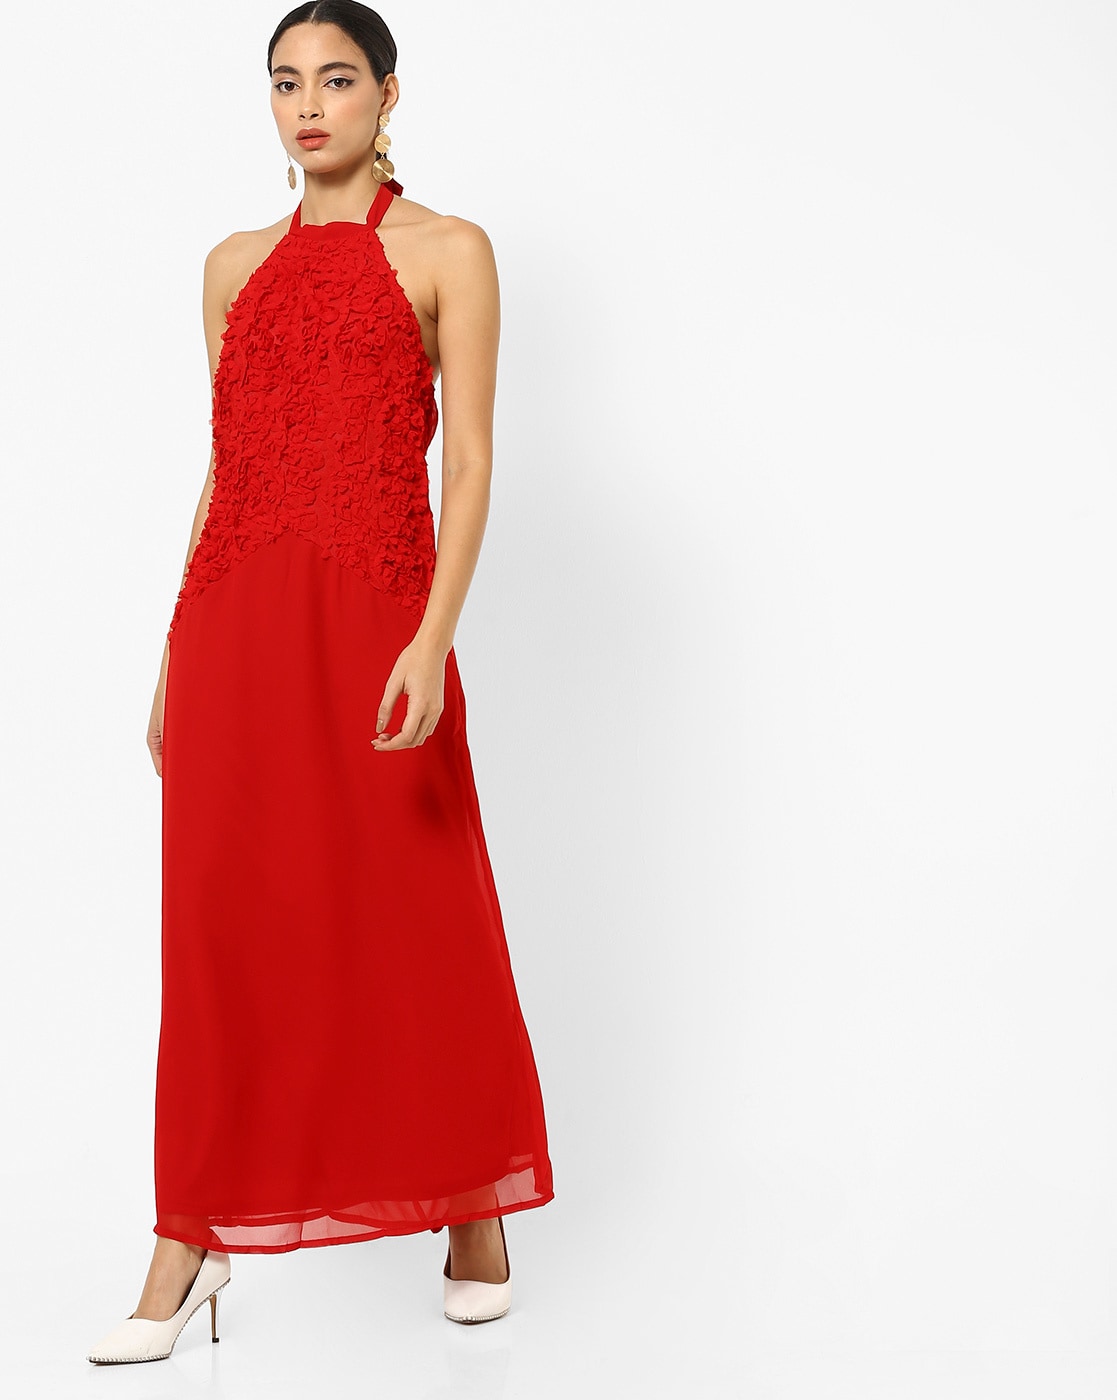 Red Dresses for by Rare Online Ajio.com